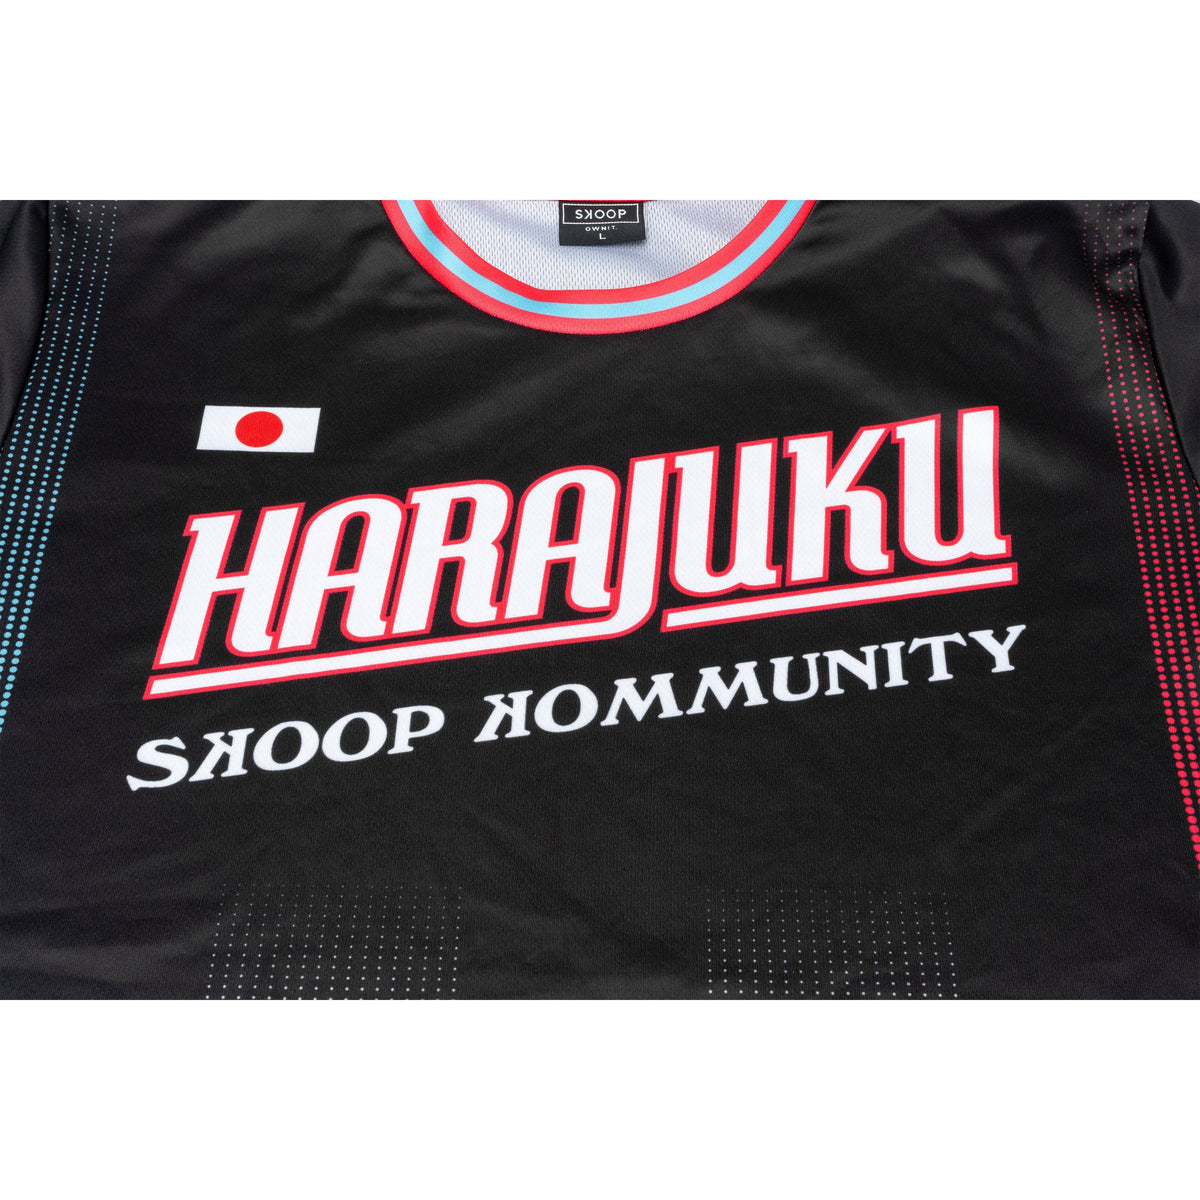 Harajuku 2.0 - Skoop Kommunity